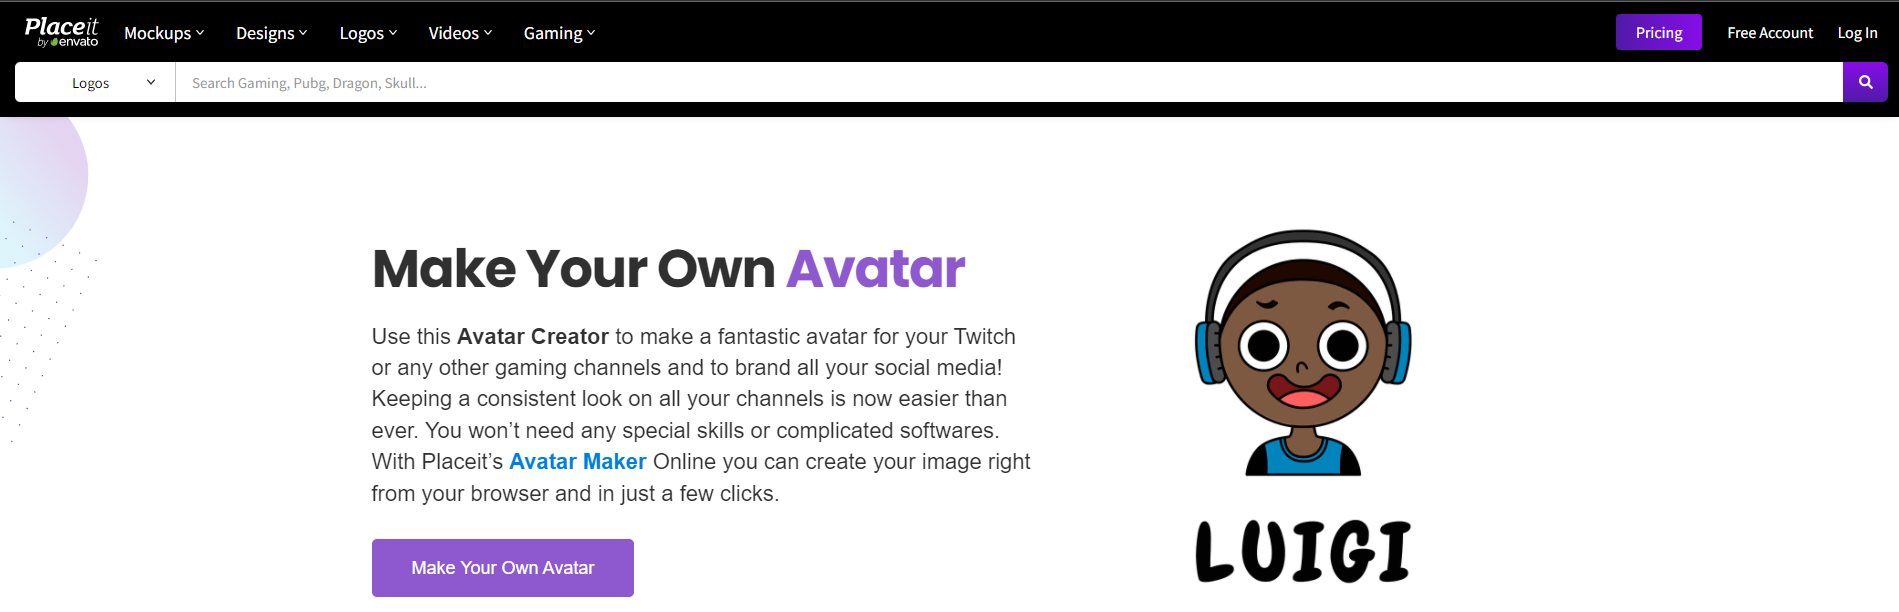 Place It - Cartoon Avatar Maker Online